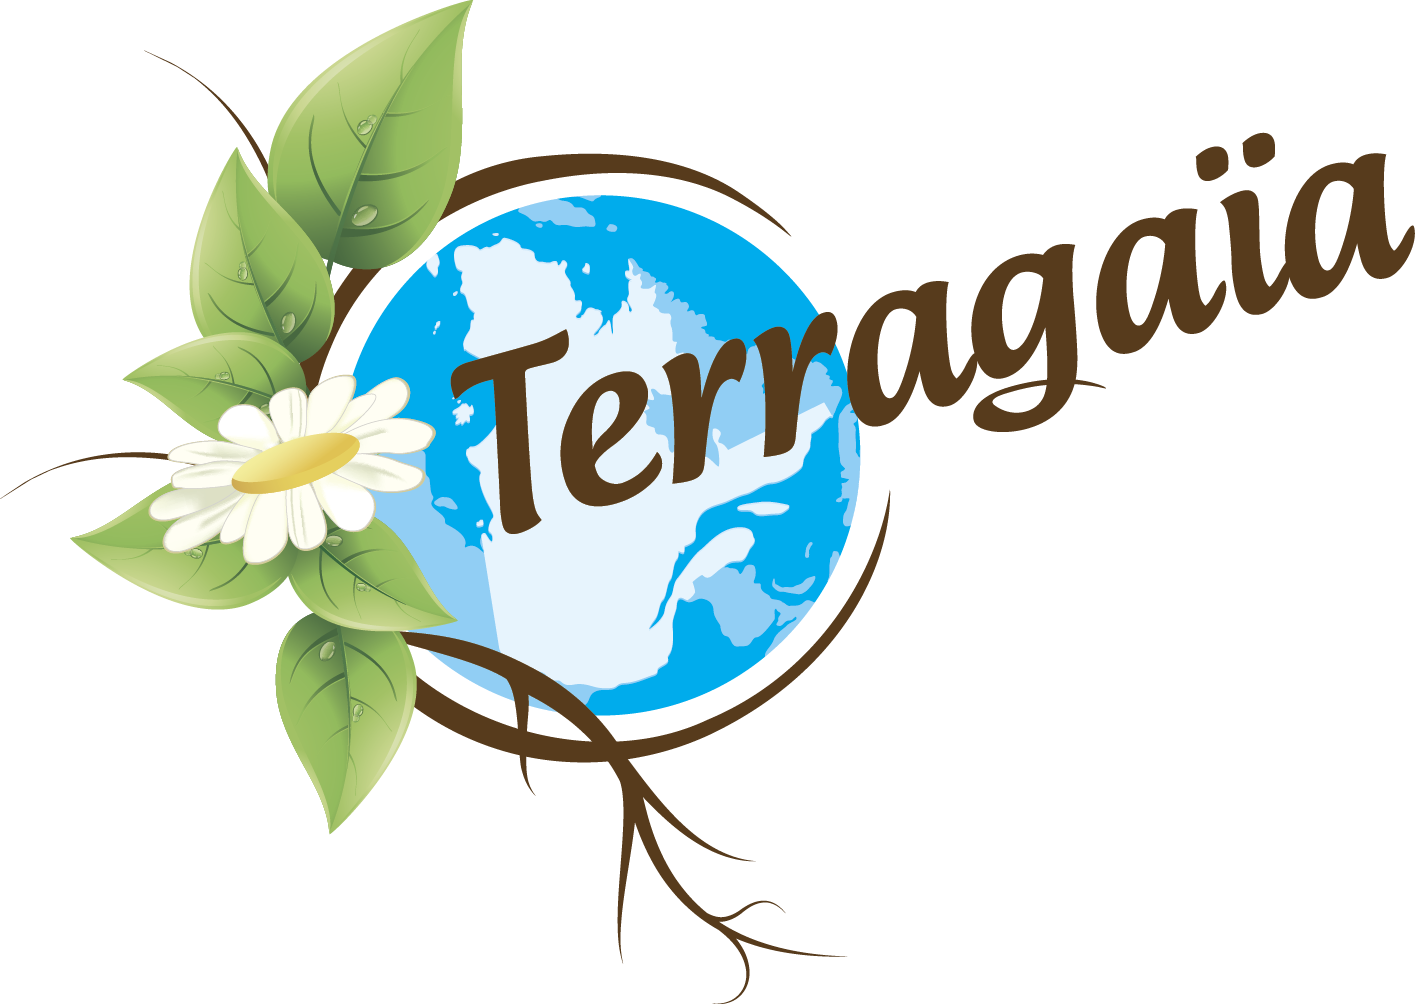 Terragaia